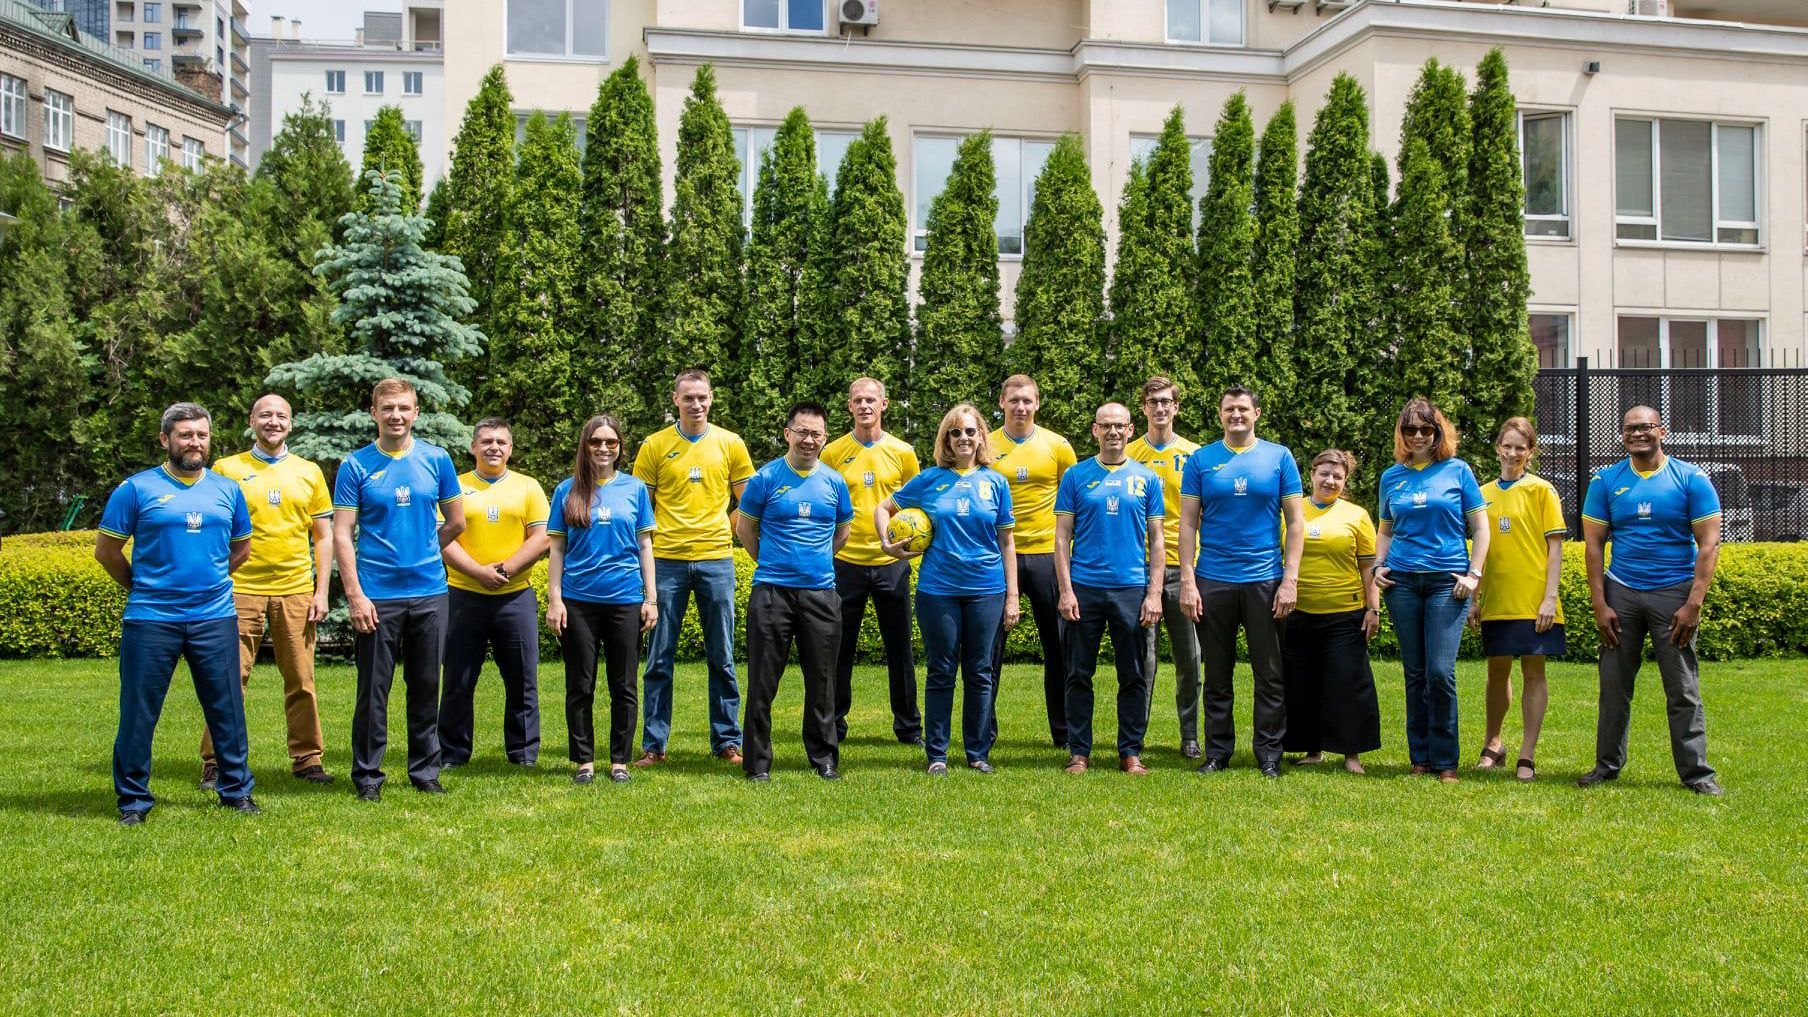 Посольство США в Украине похвасталось фотографией в новенькой форме сборной Украины по футболу